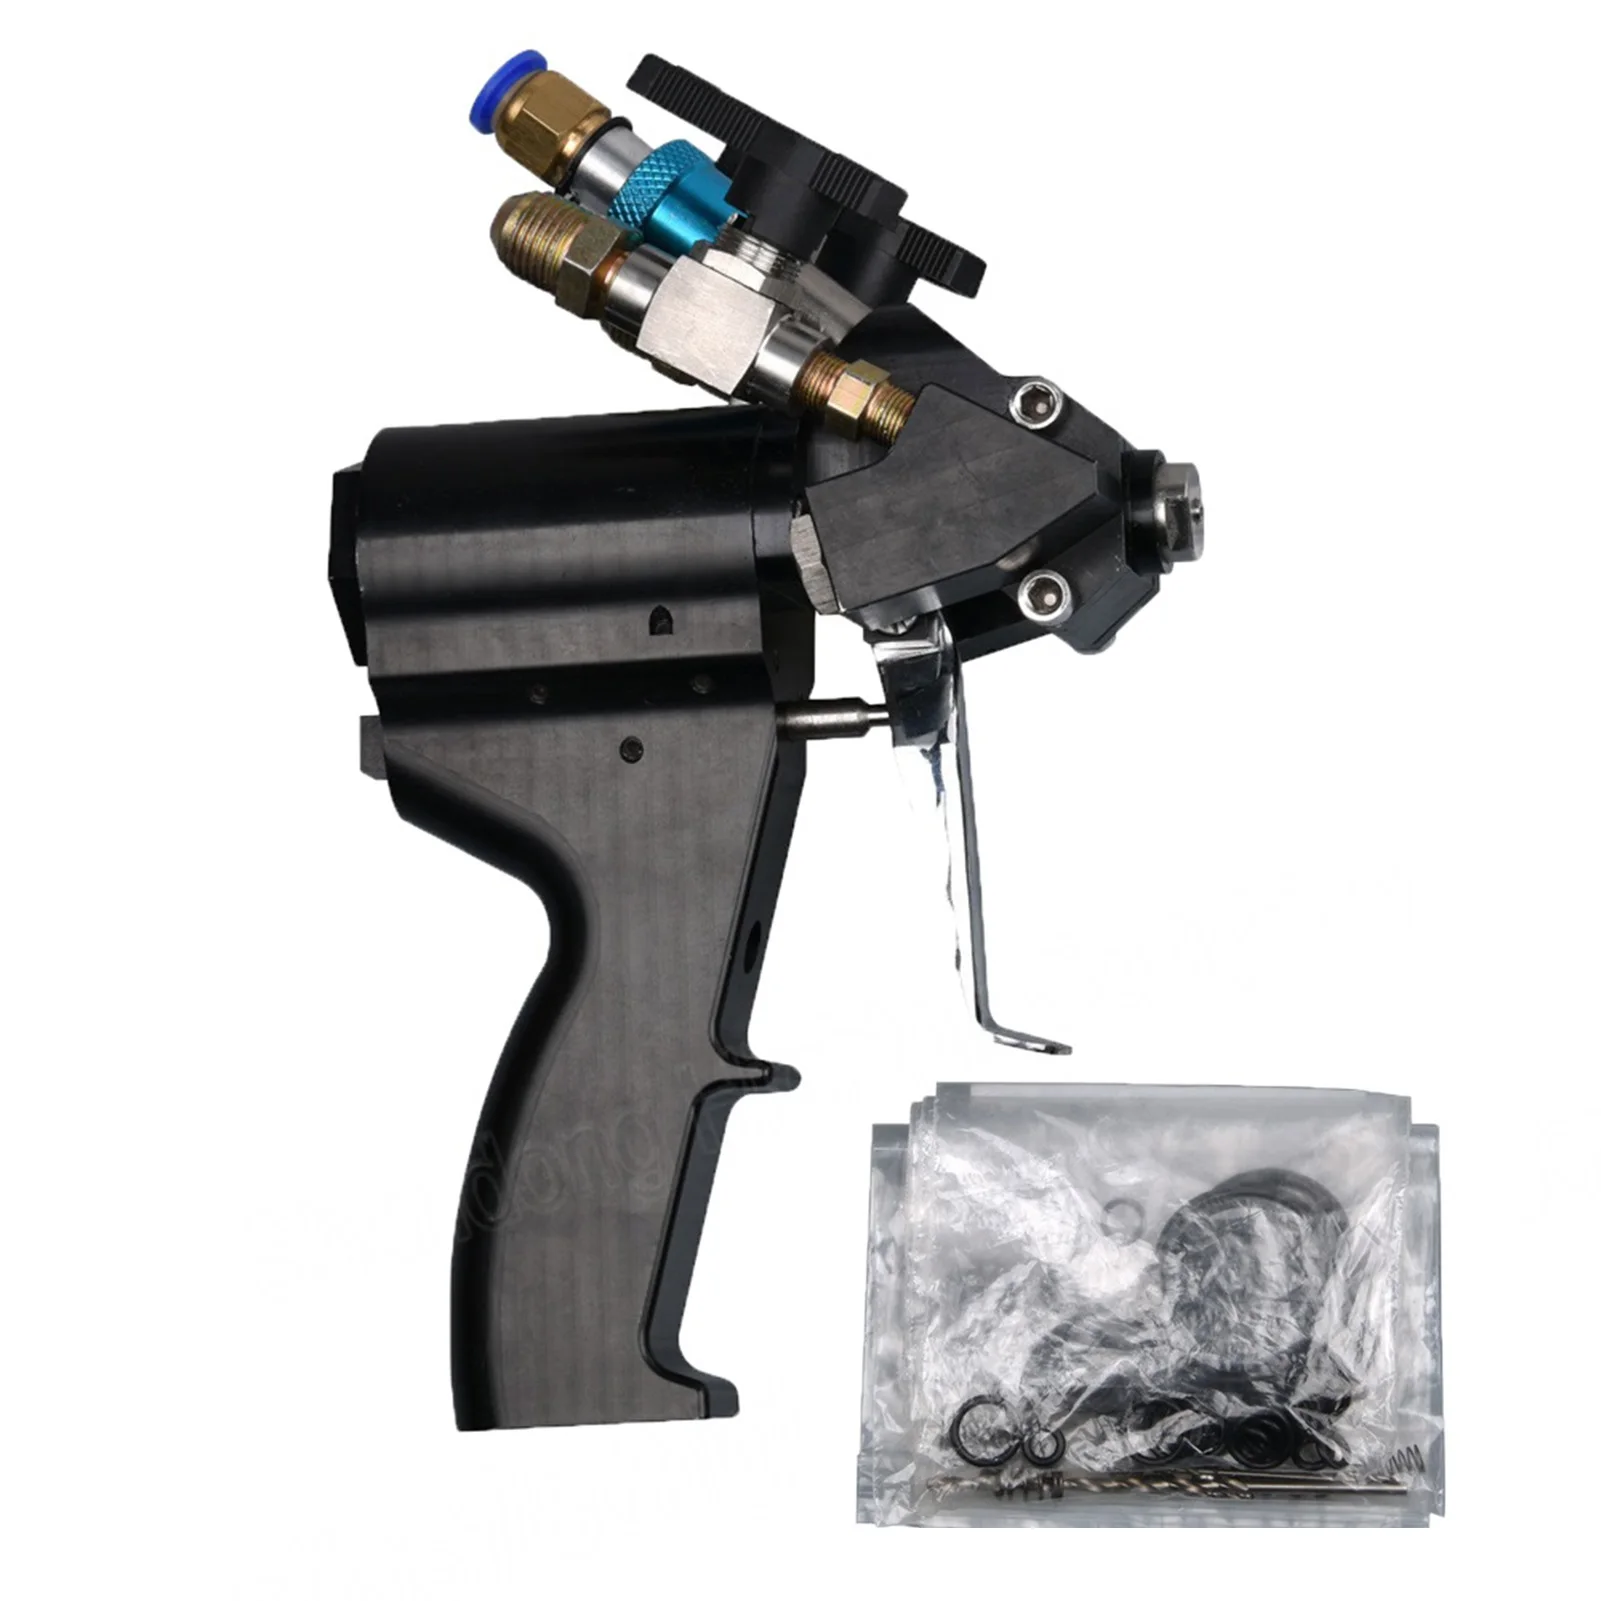 

ДВУХКОМПОНЕНТНЫЙ ПОЛИУРЕТАНОВЫЙ пенополиуретановый пистолет-распылитель P2 пневматический пистолет-распылитель для самоочистки